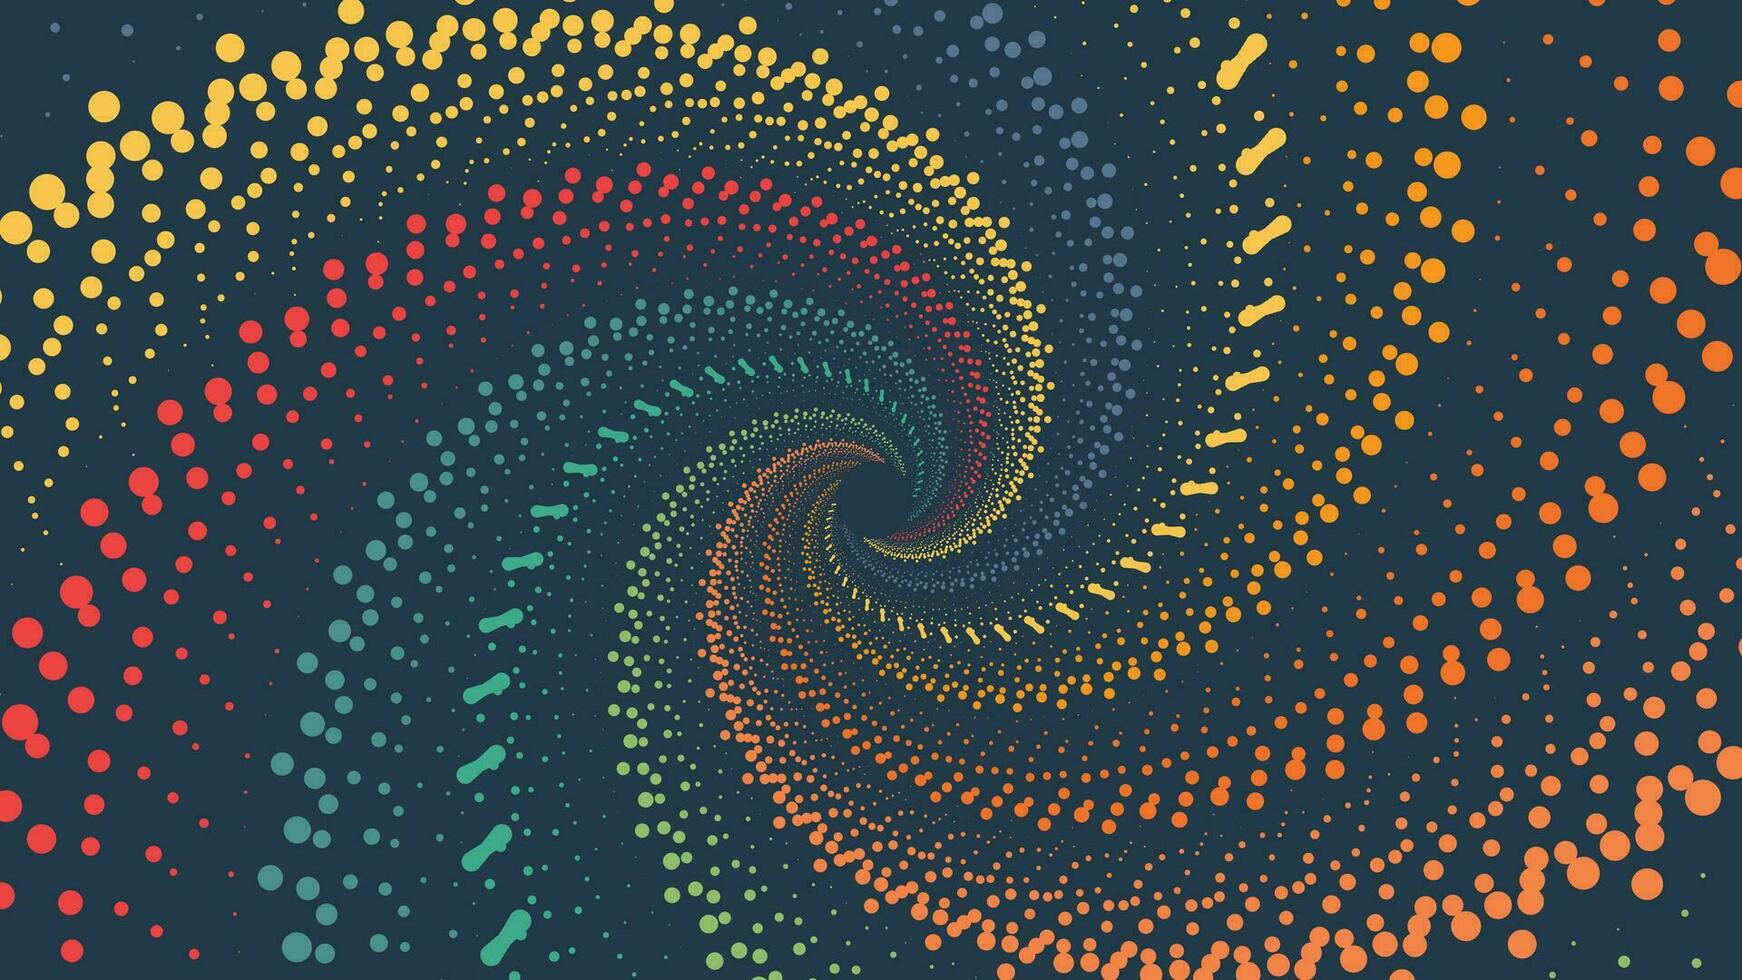 abstrakt Spiral- kreativ Wirbel minimalistisch Hintergrund im Regenbogen Farbe. vektor